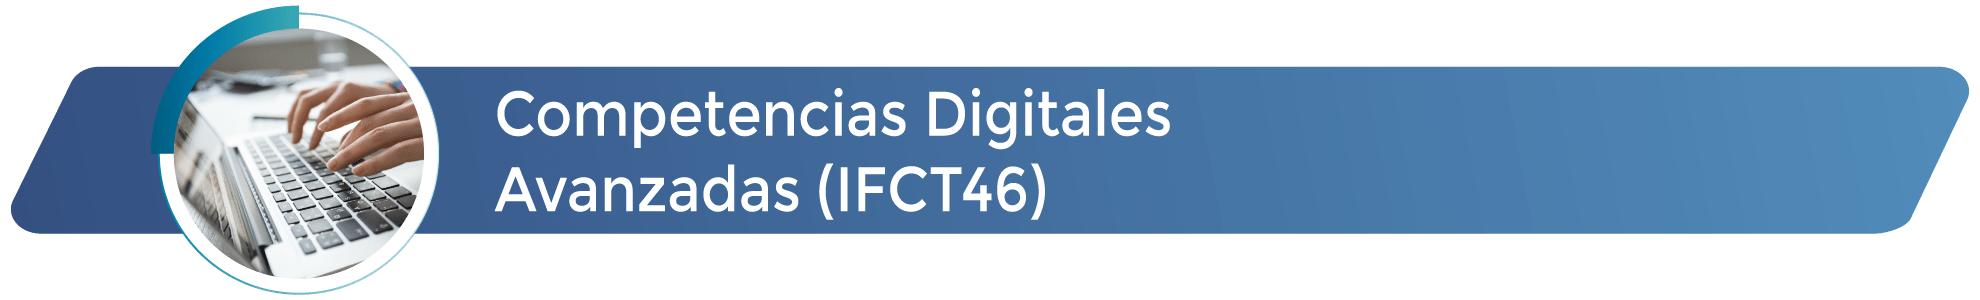 IFCT46 - Competencias digitales avanzadas